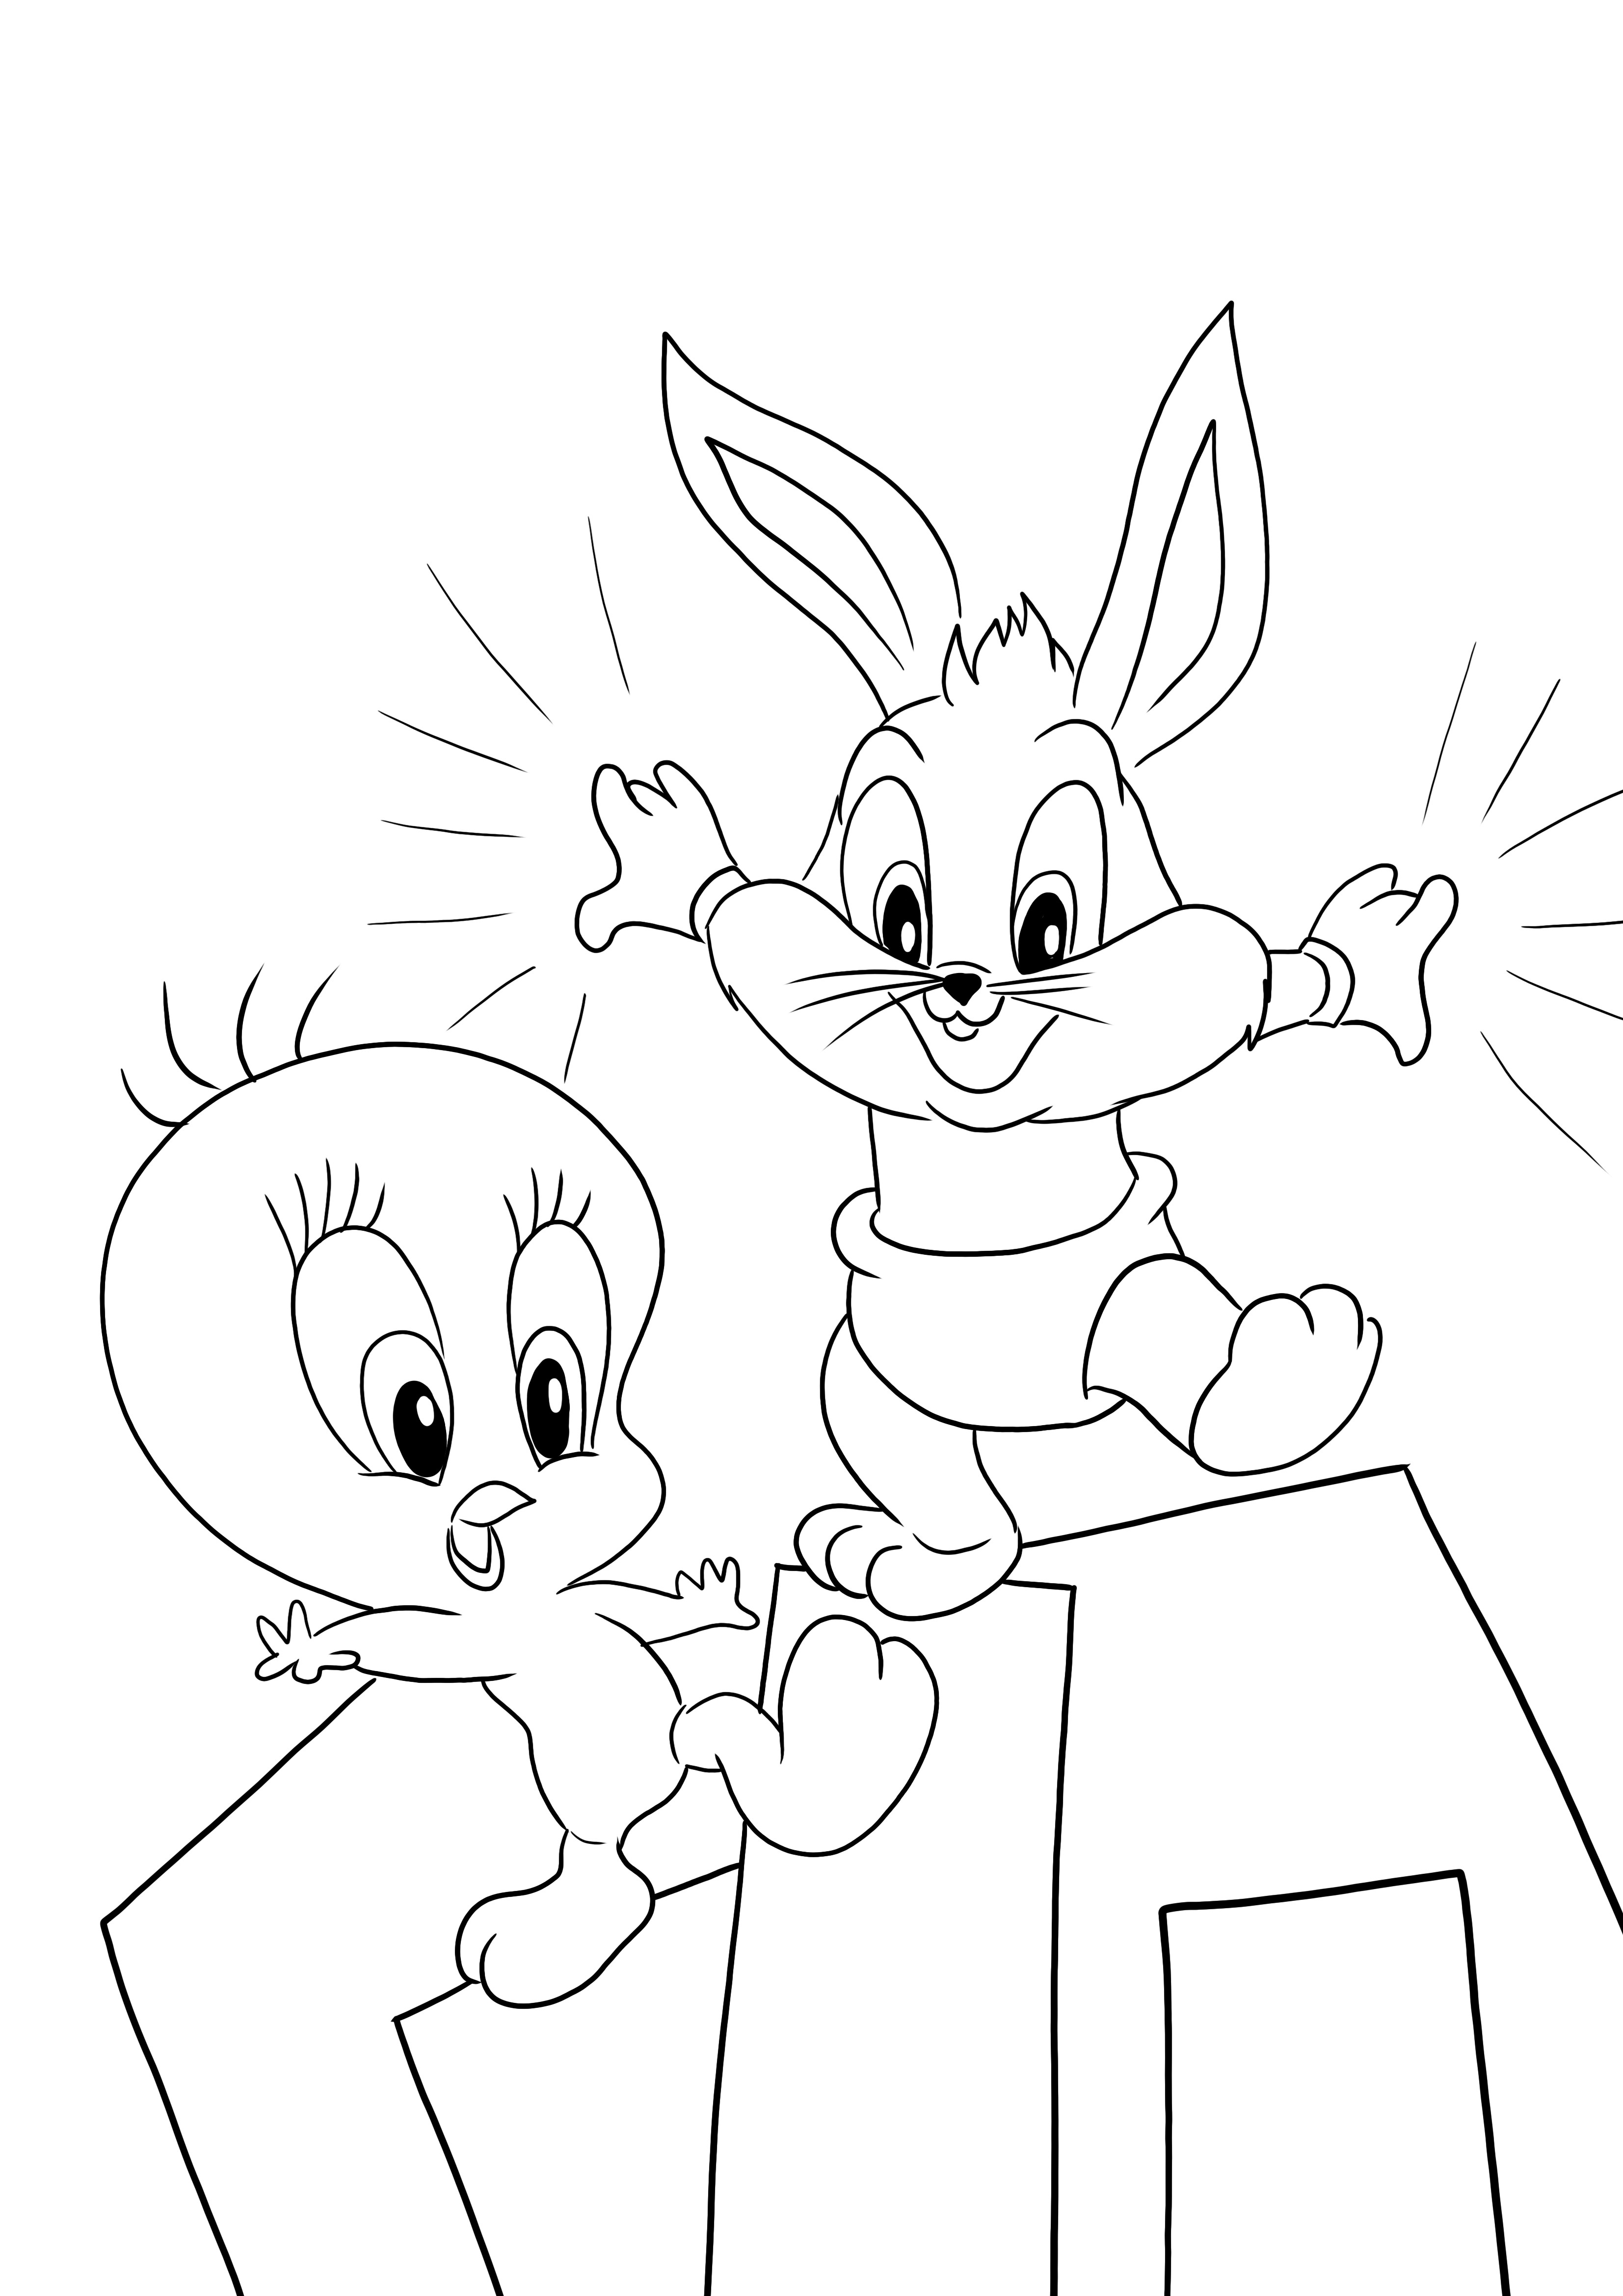 Titti e Bugs Bunny di Baby Looney Tunes stampabili gratuitamente per la colorazione